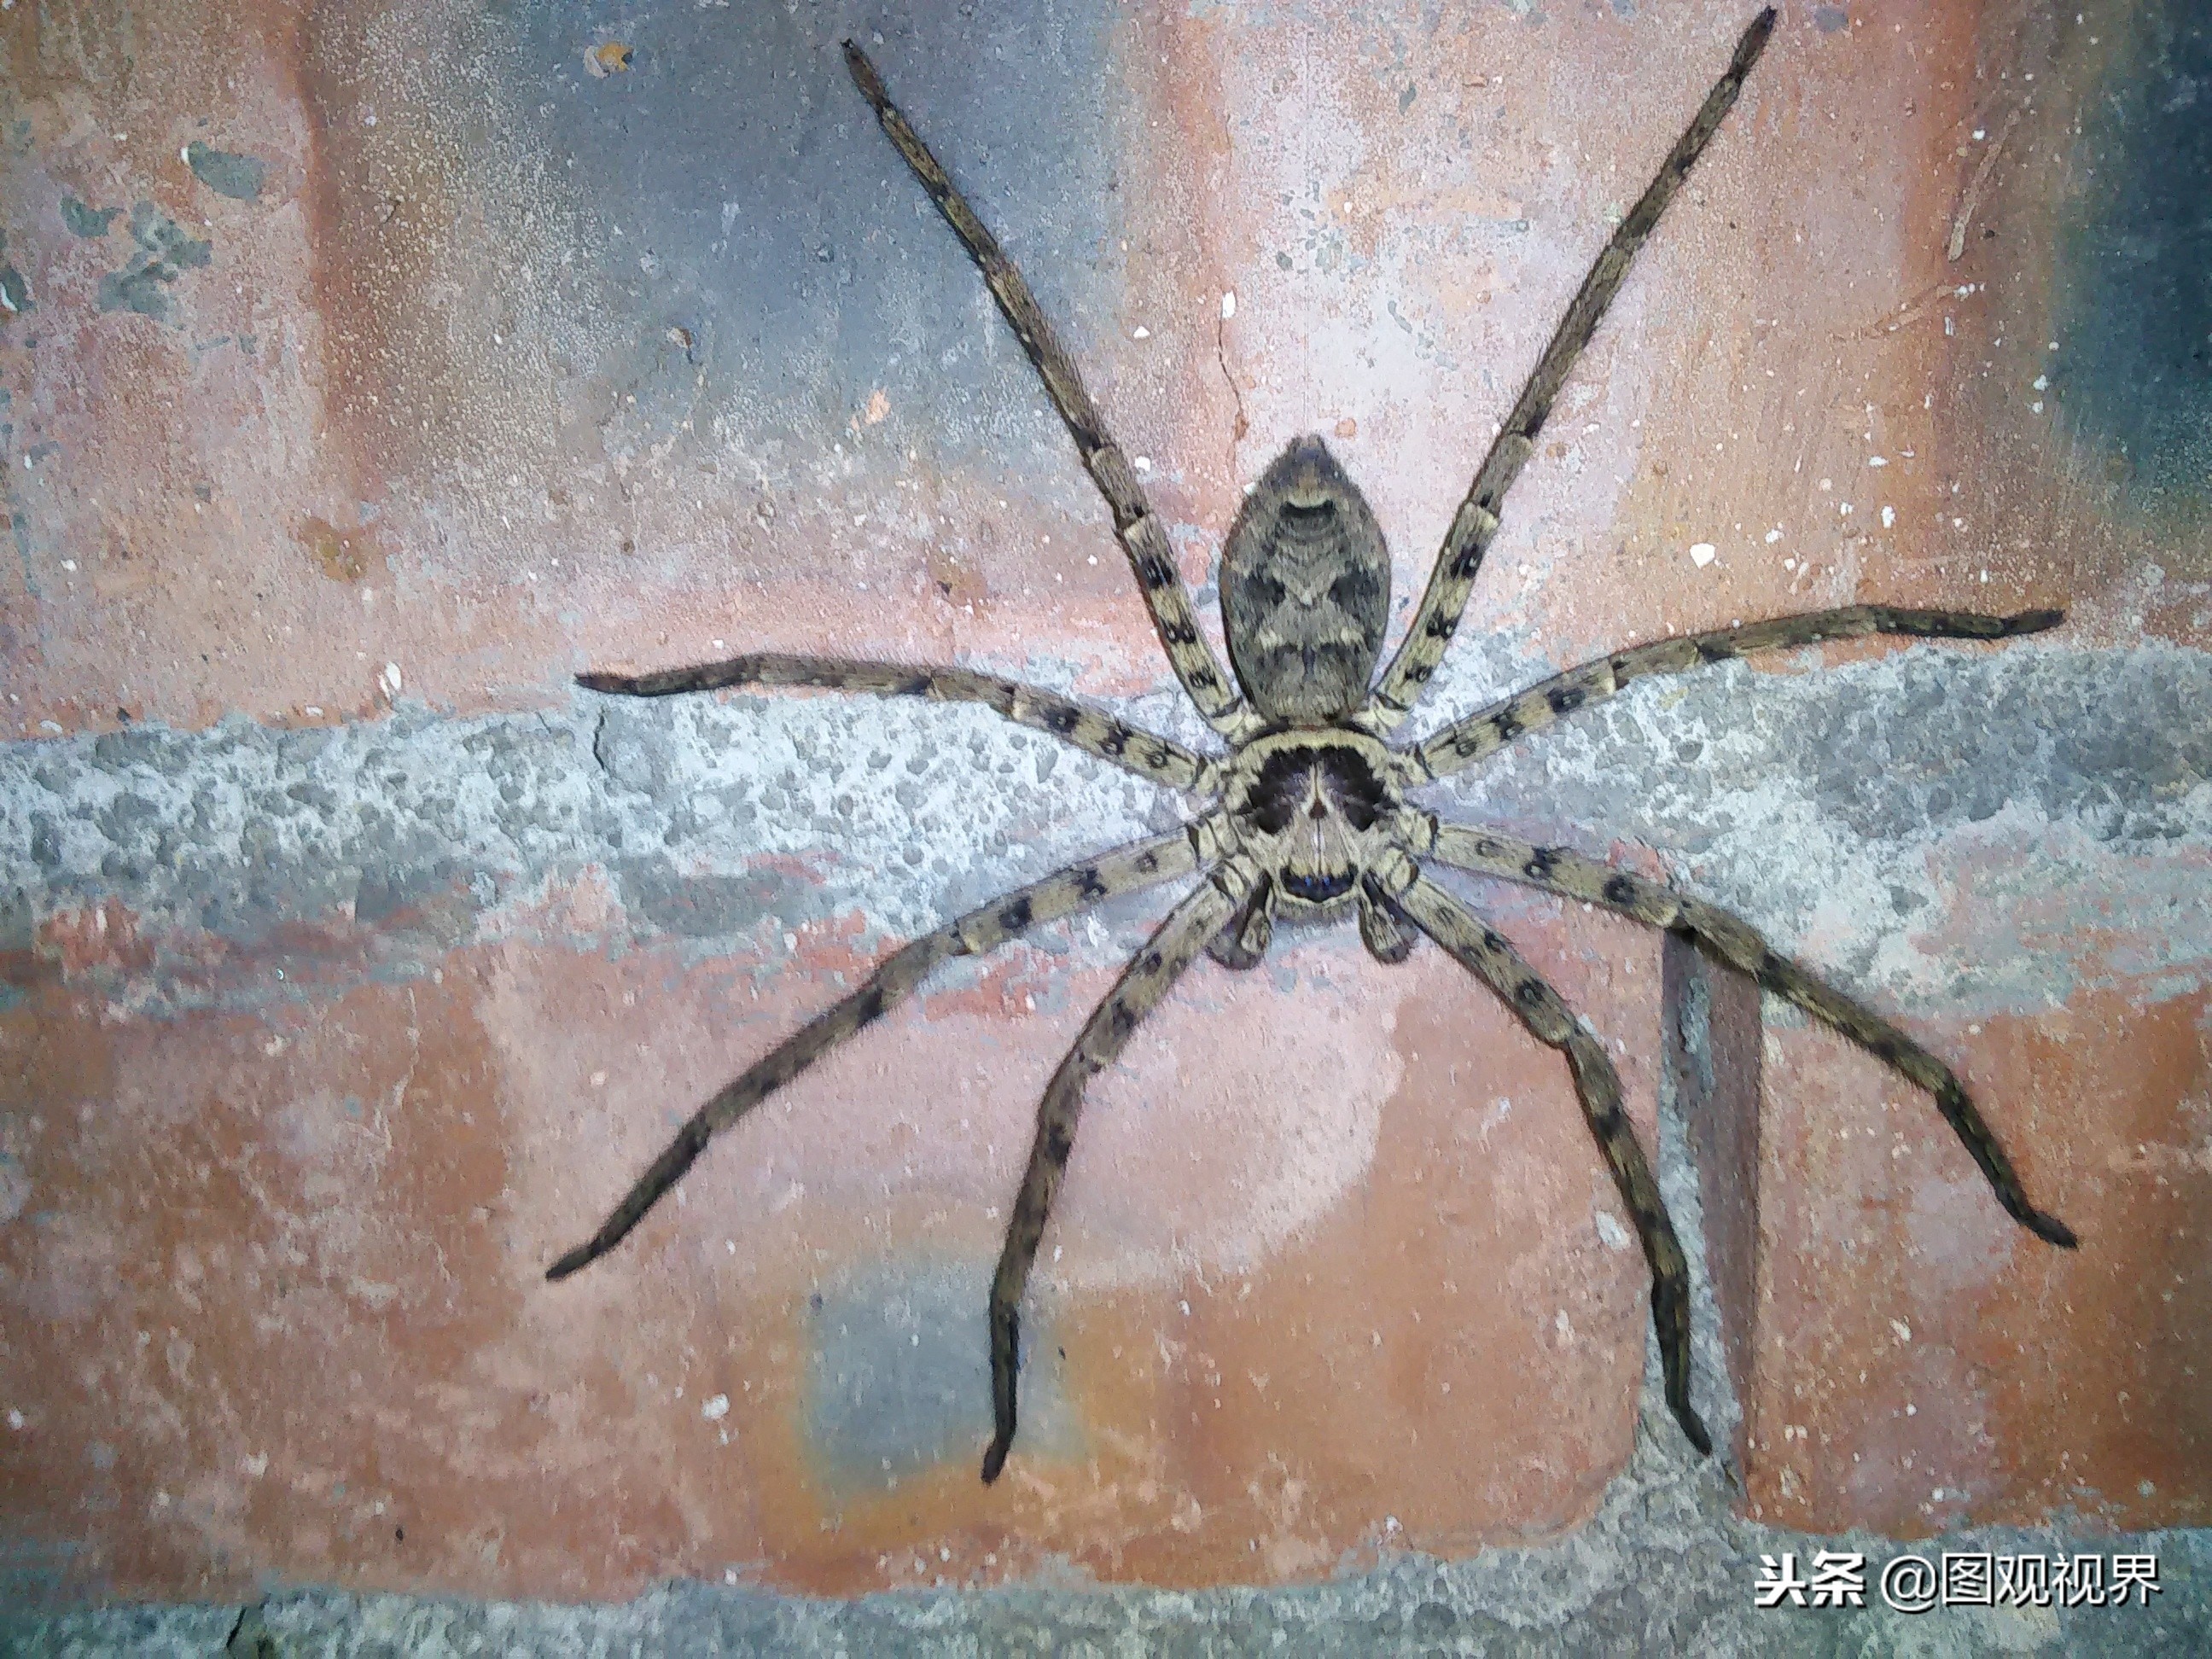 这种蜘蛛喜欢生活在室内 农村老房子里比较多 是蟑螂的主要天敌 天天看点